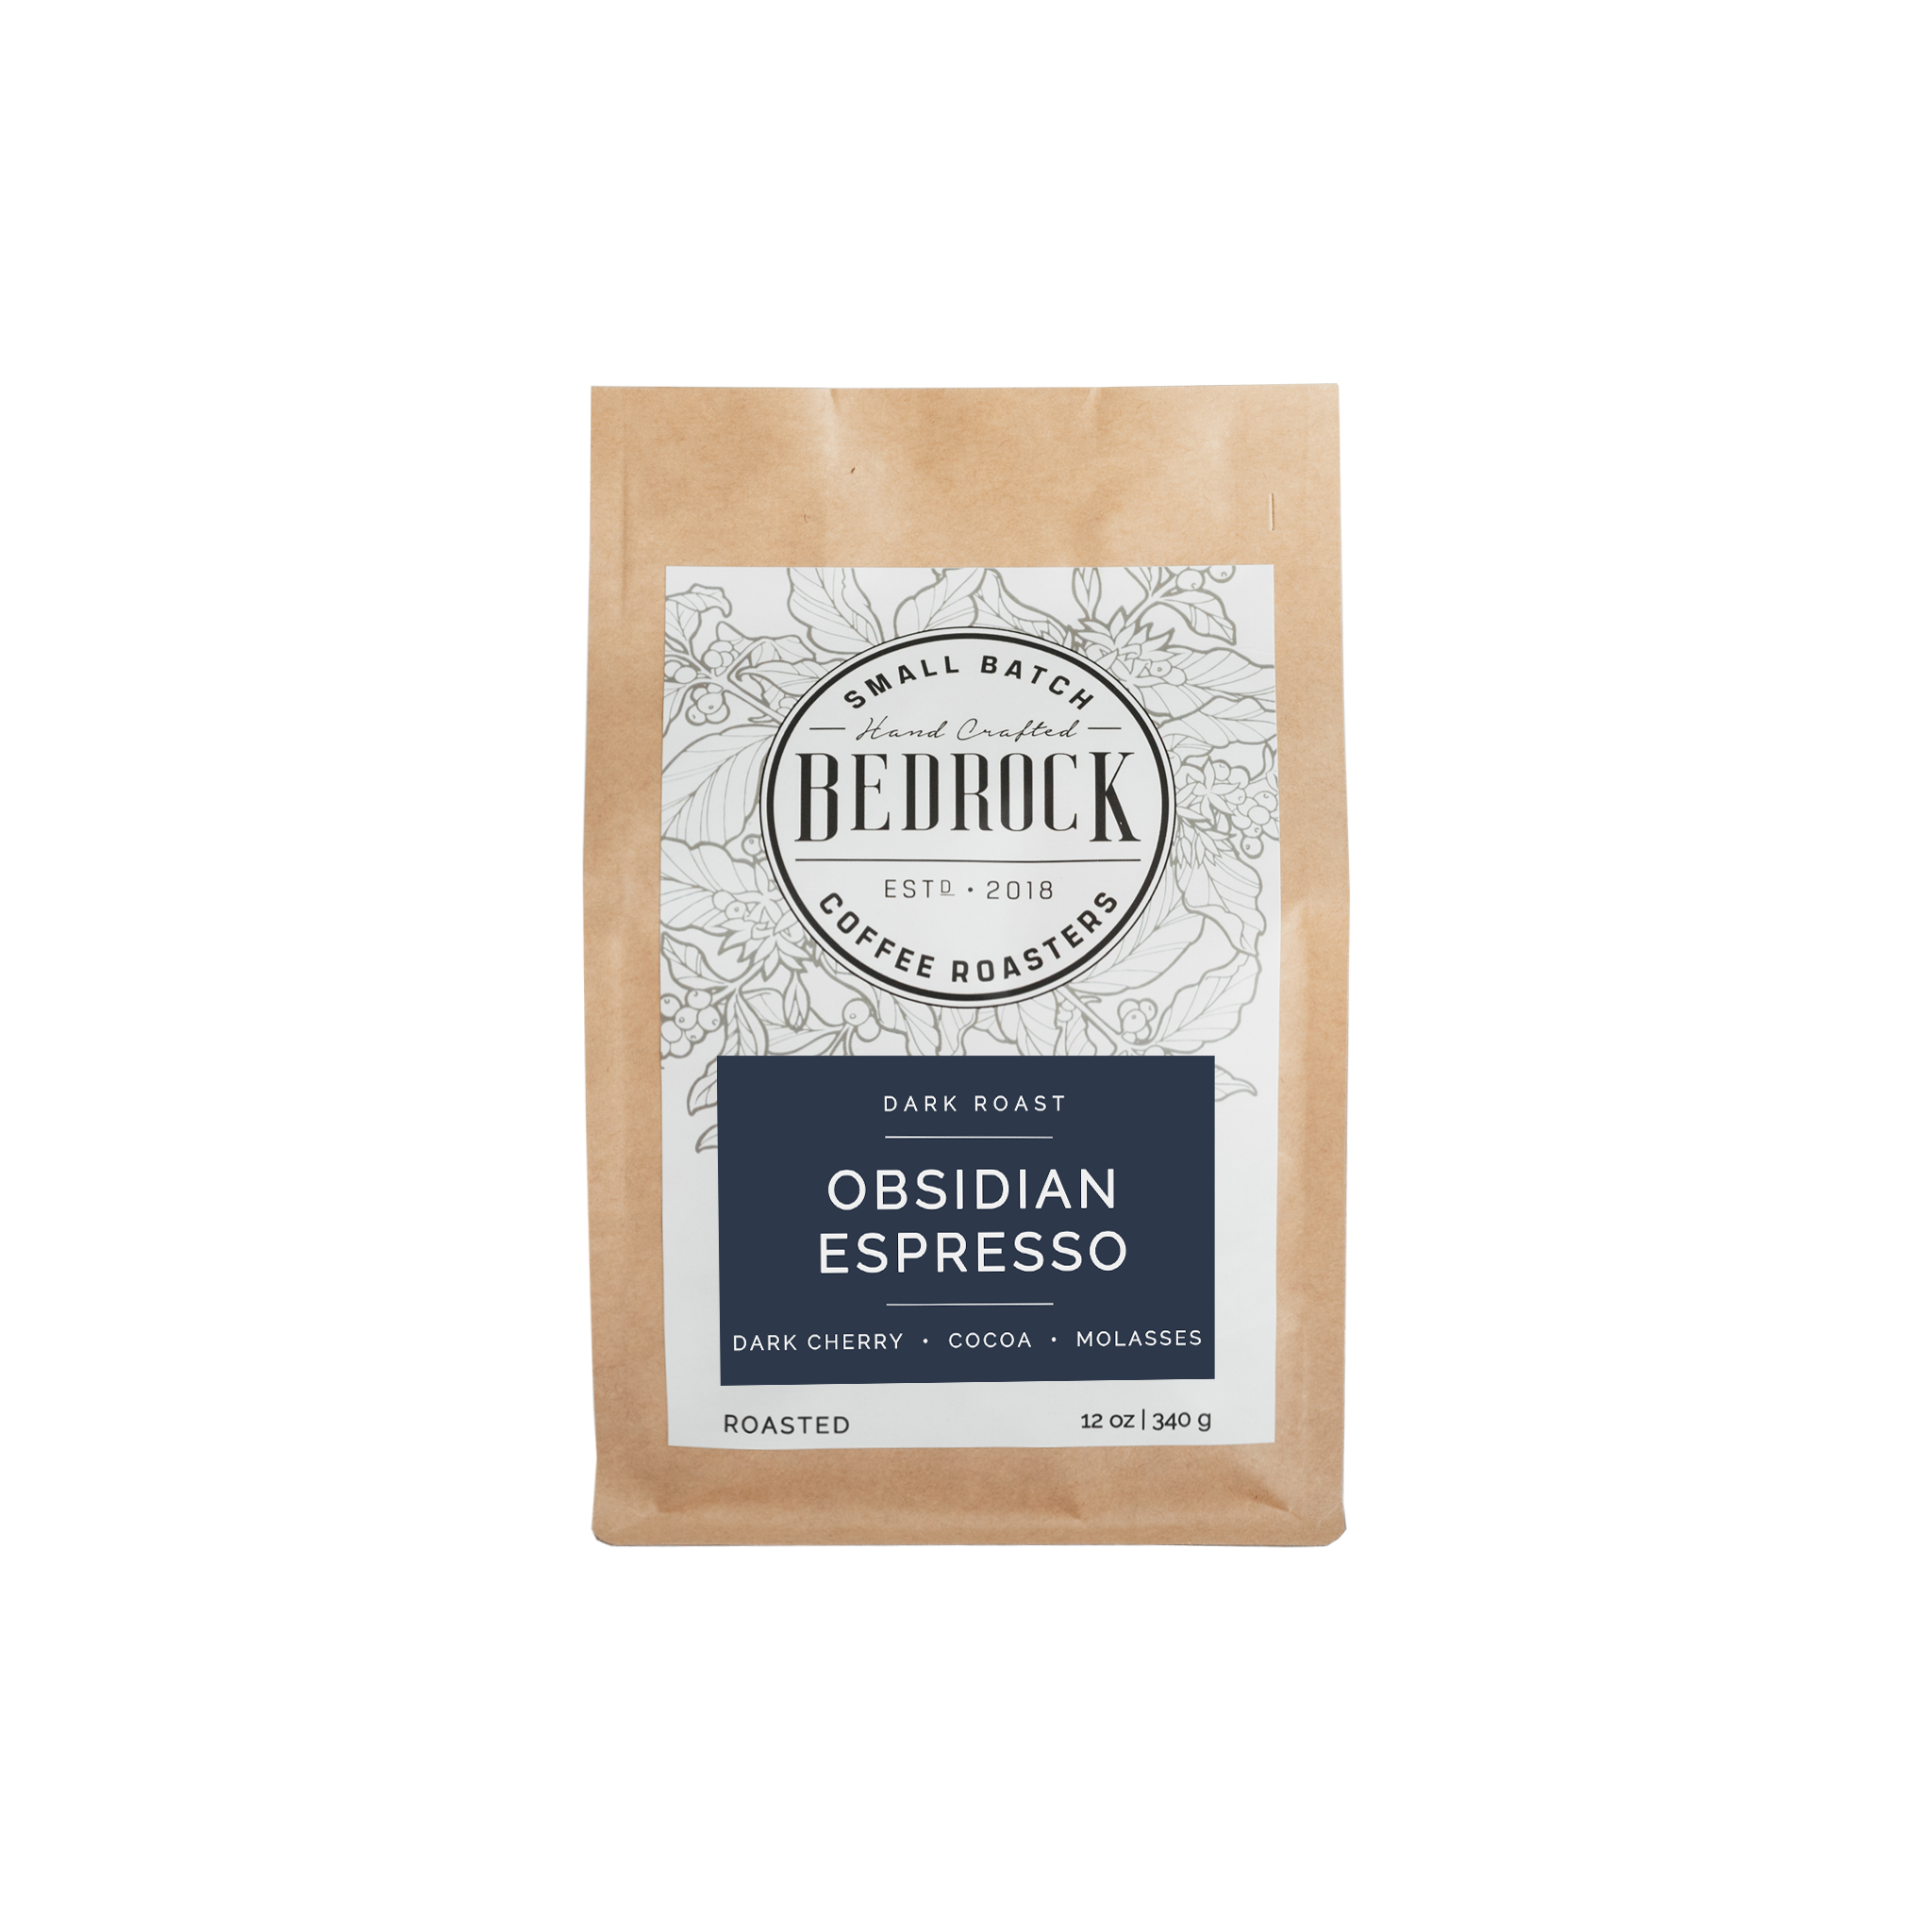 Obsidian, Espresso